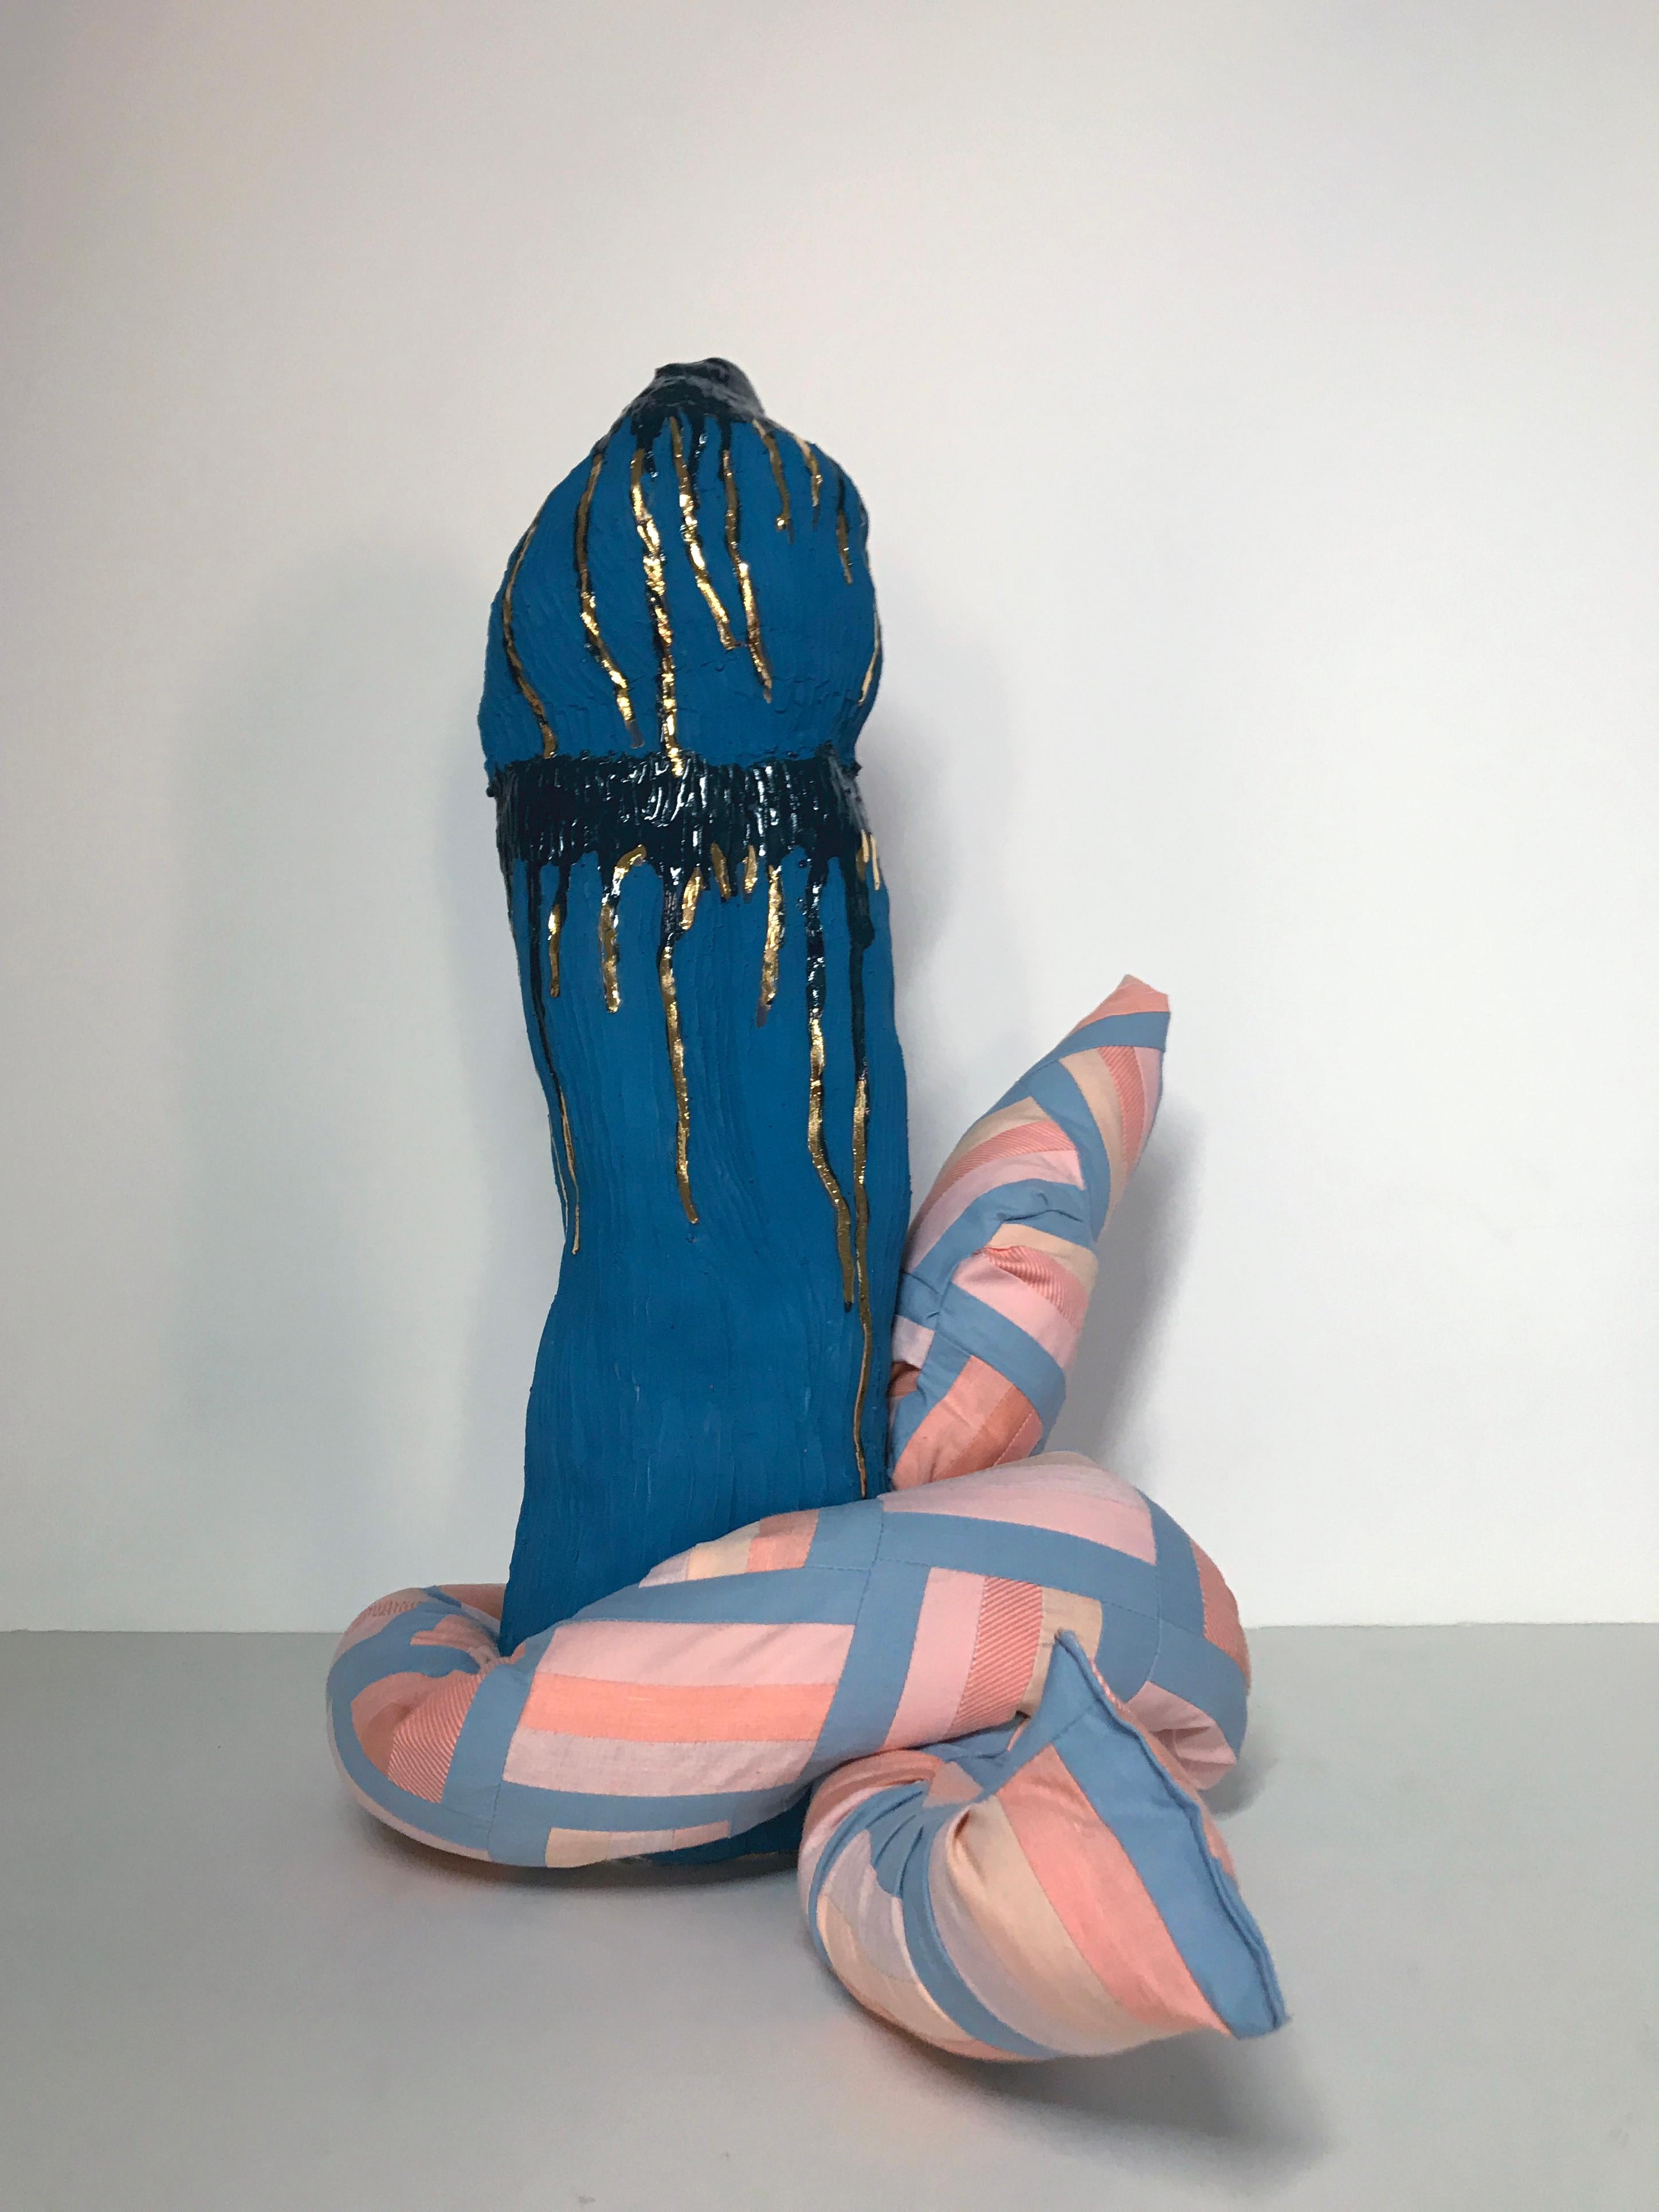 Sculpture en céramique et textile : « N° 2 » - Or Abstract Sculpture par Ak Jansen